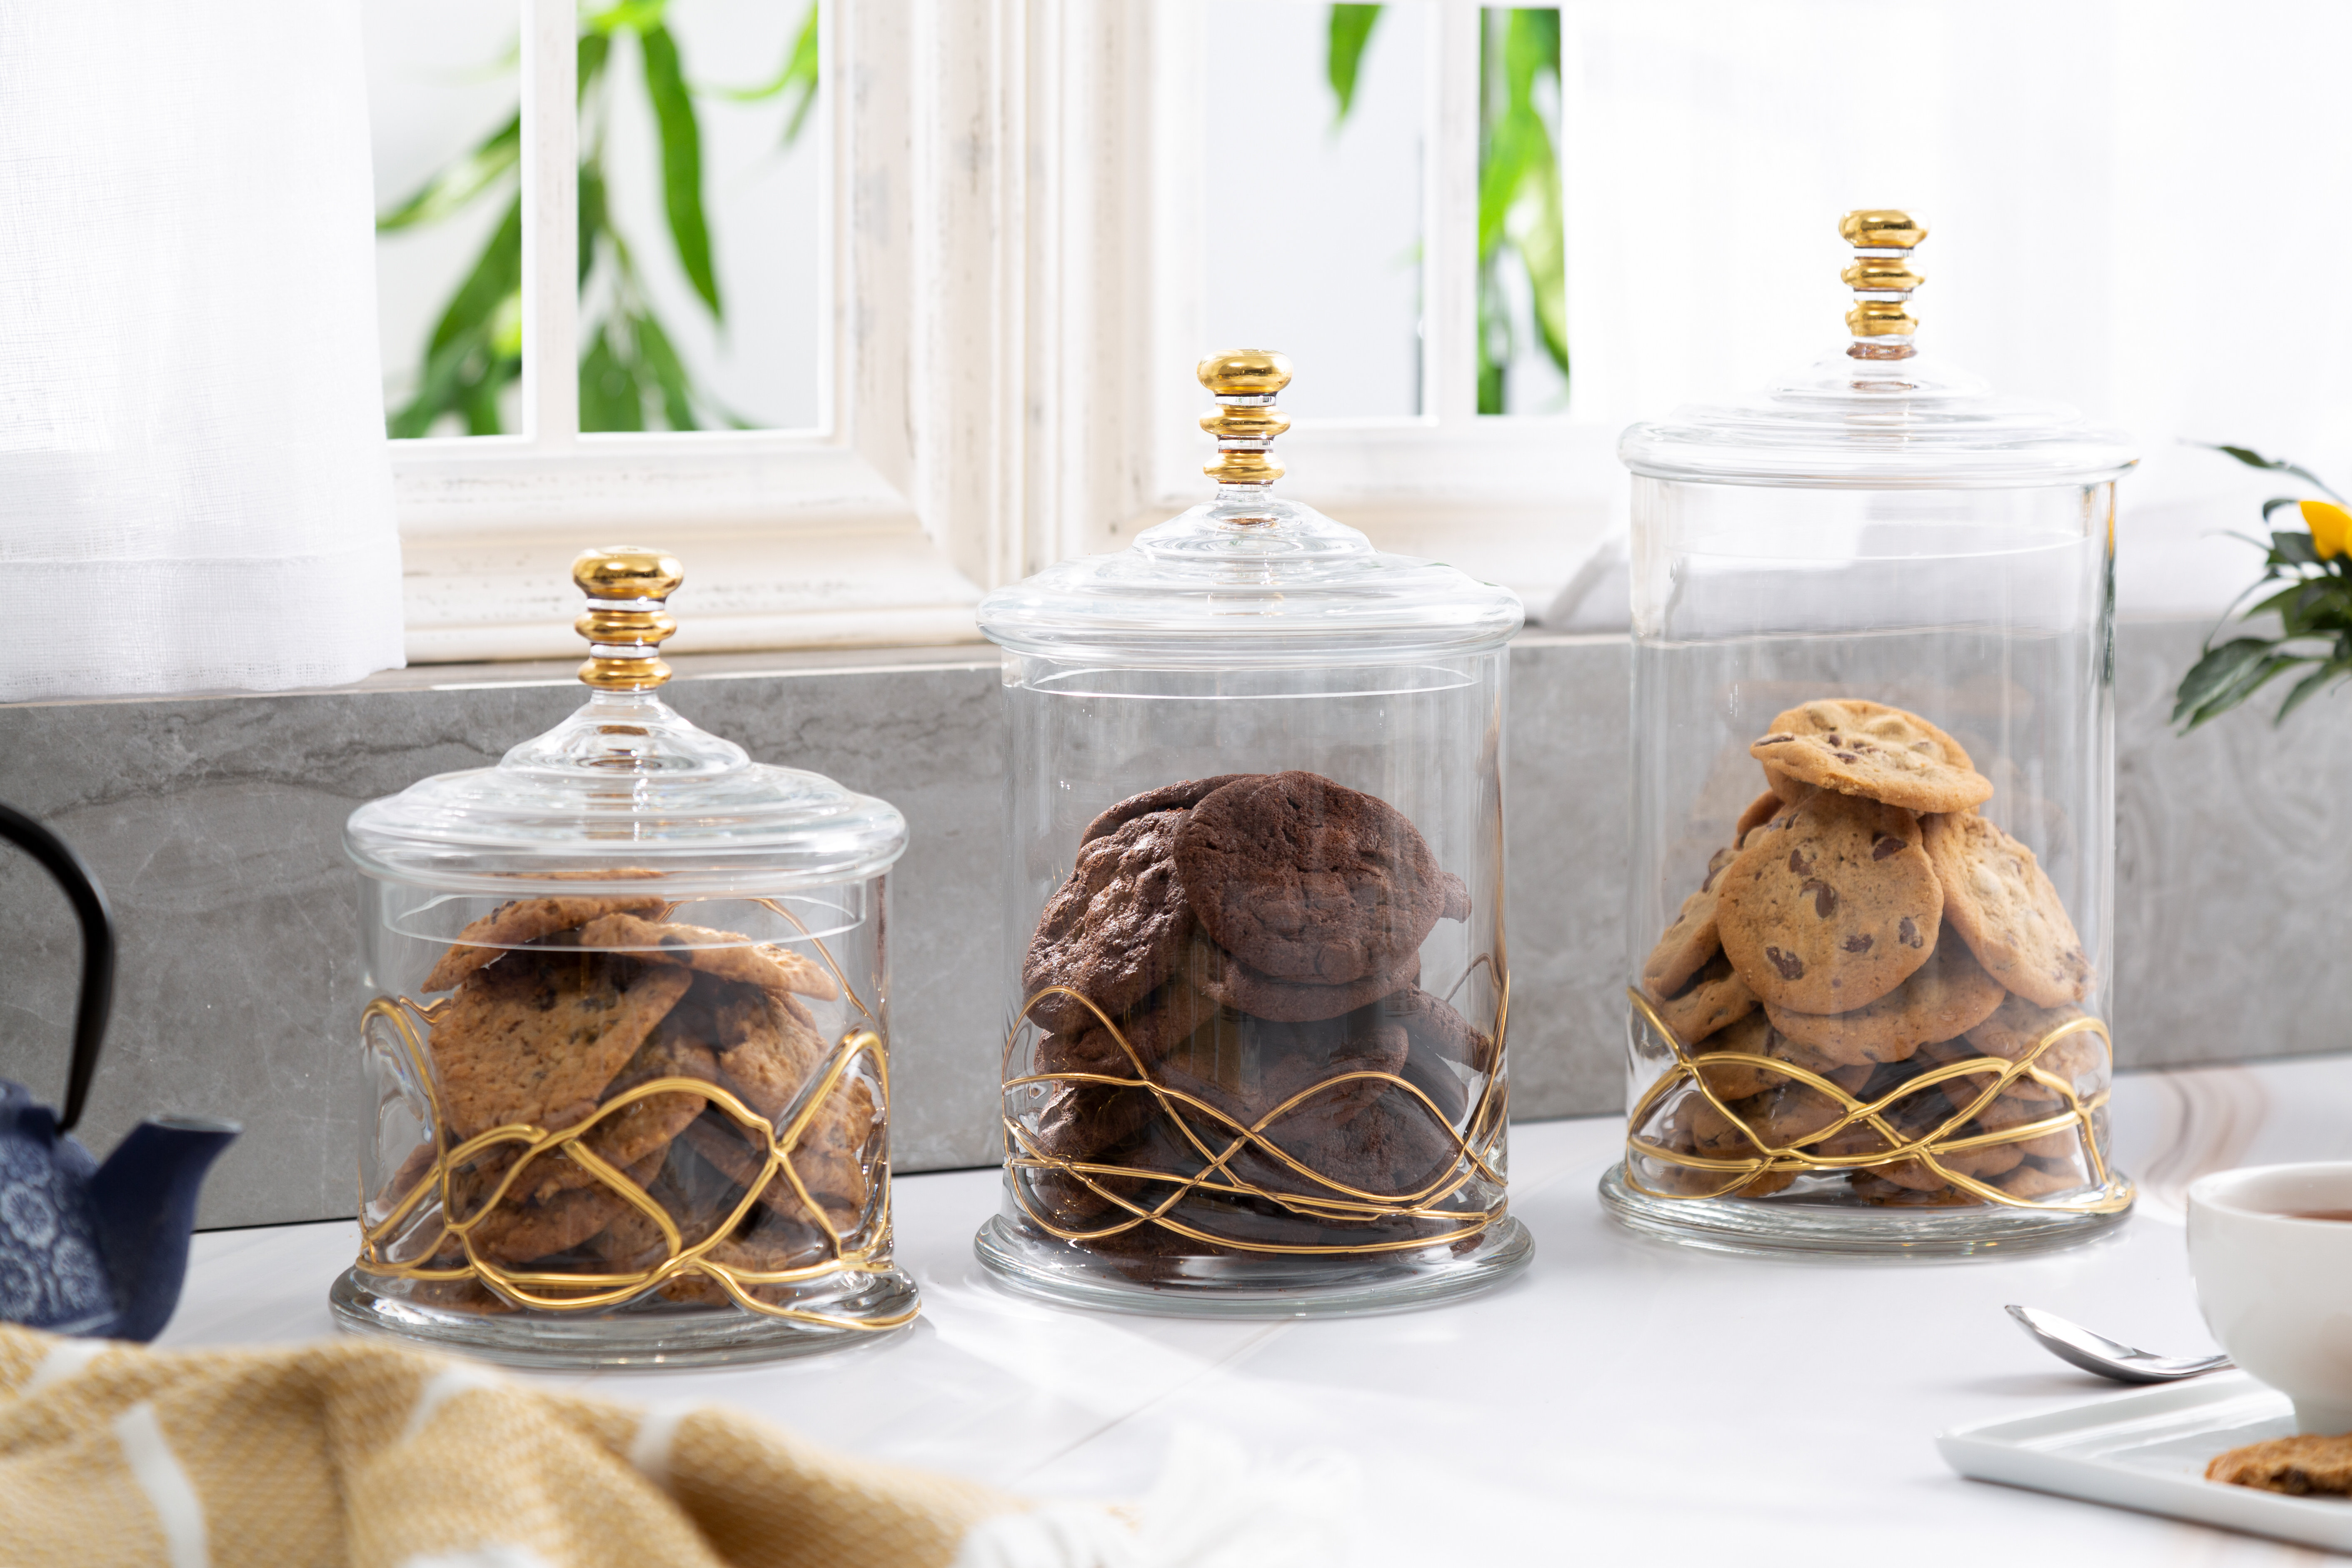 Decorative King Medusa Cookie Jar Cookie Jar with Meander Decoration Set of 3 